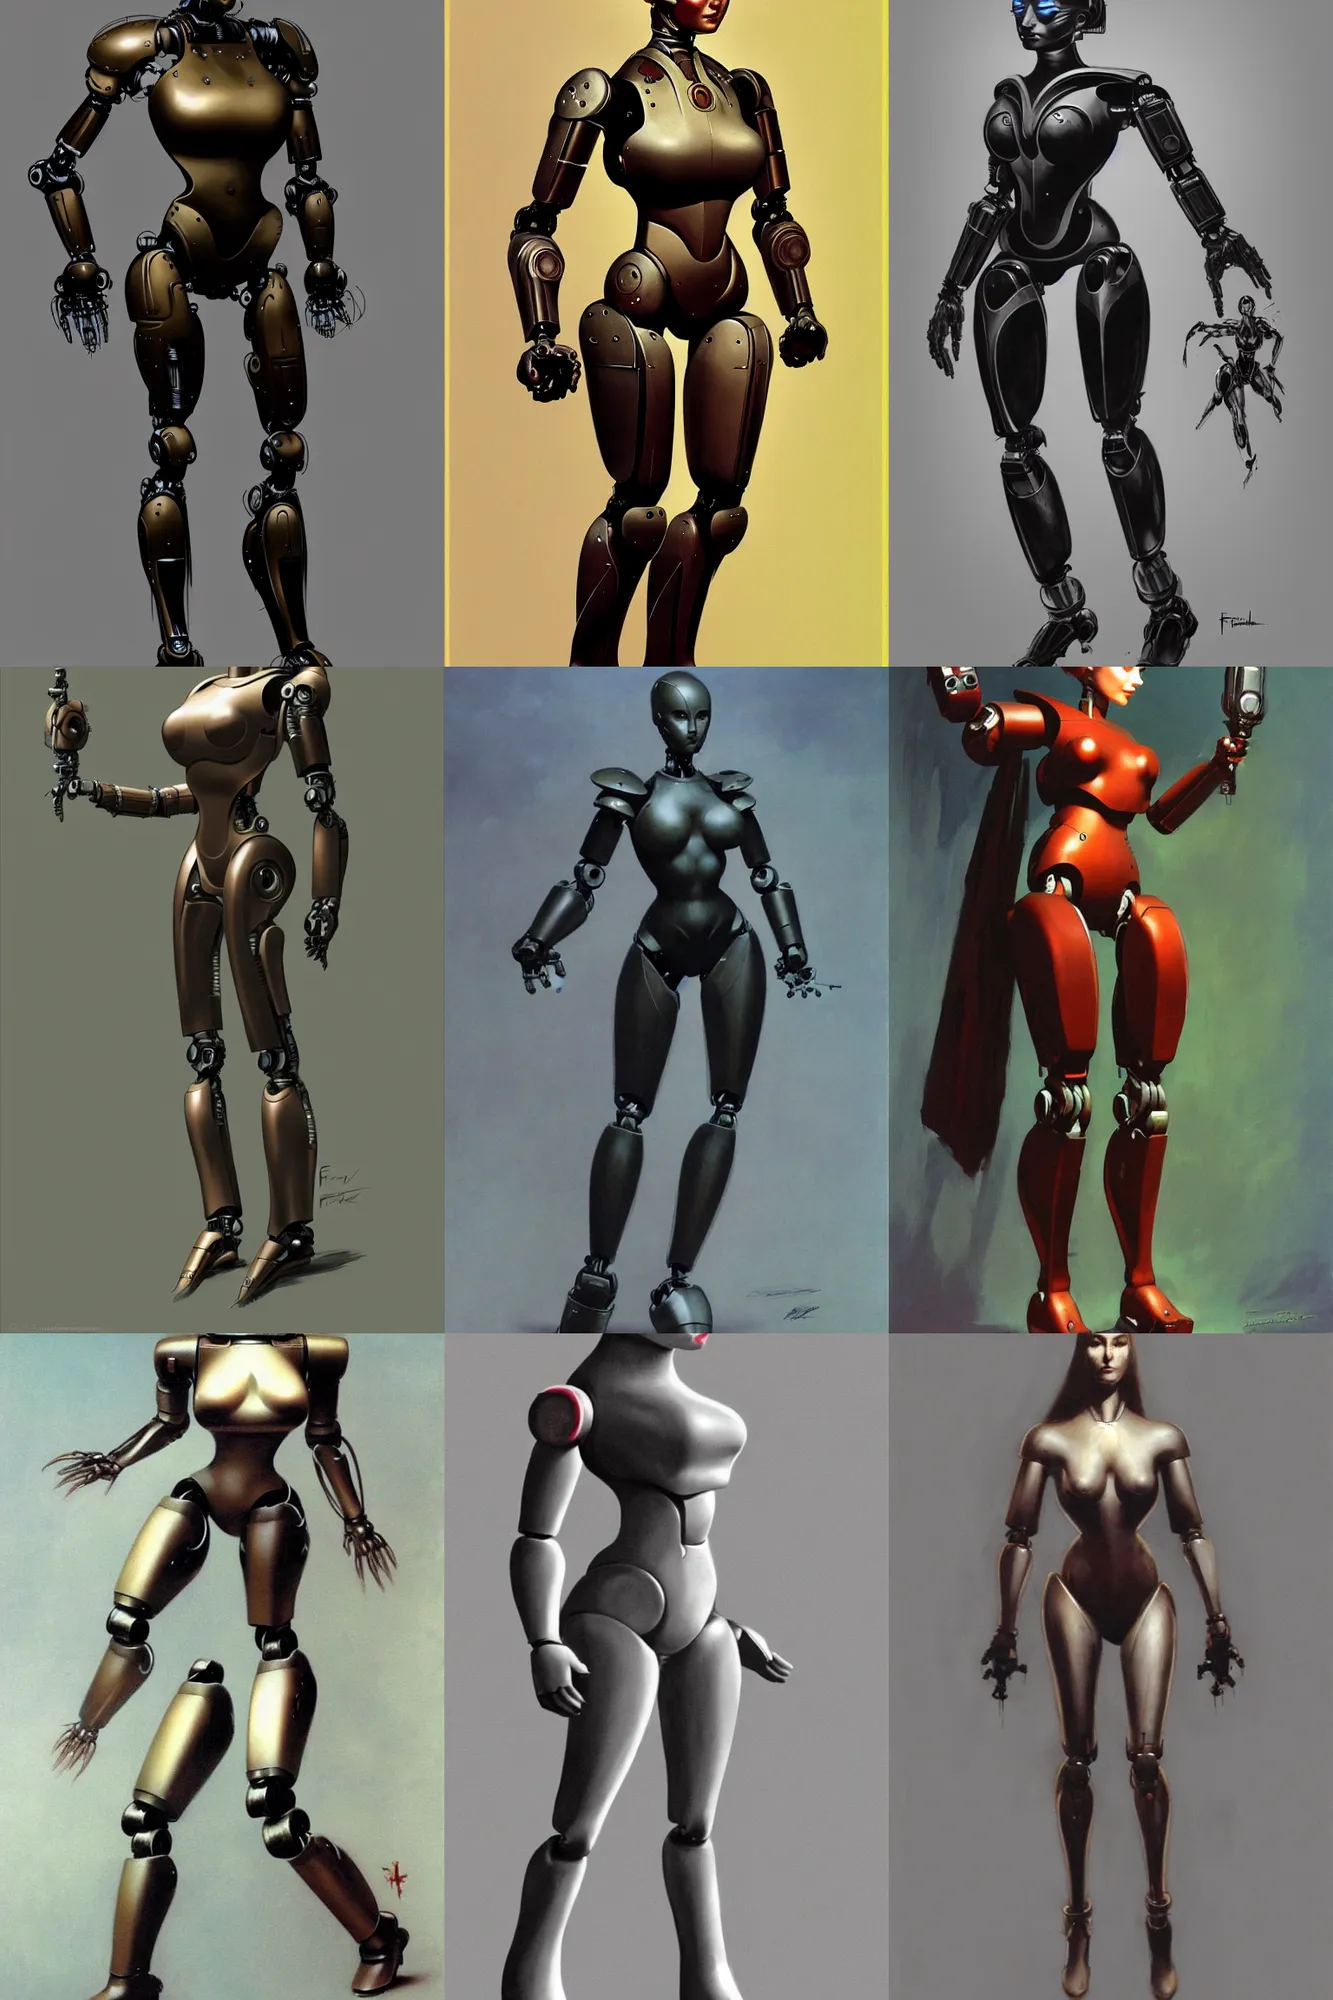 Prompt: female humanoid robot by Frank frazetta full body profile, trending on artstation, dramatic lightning